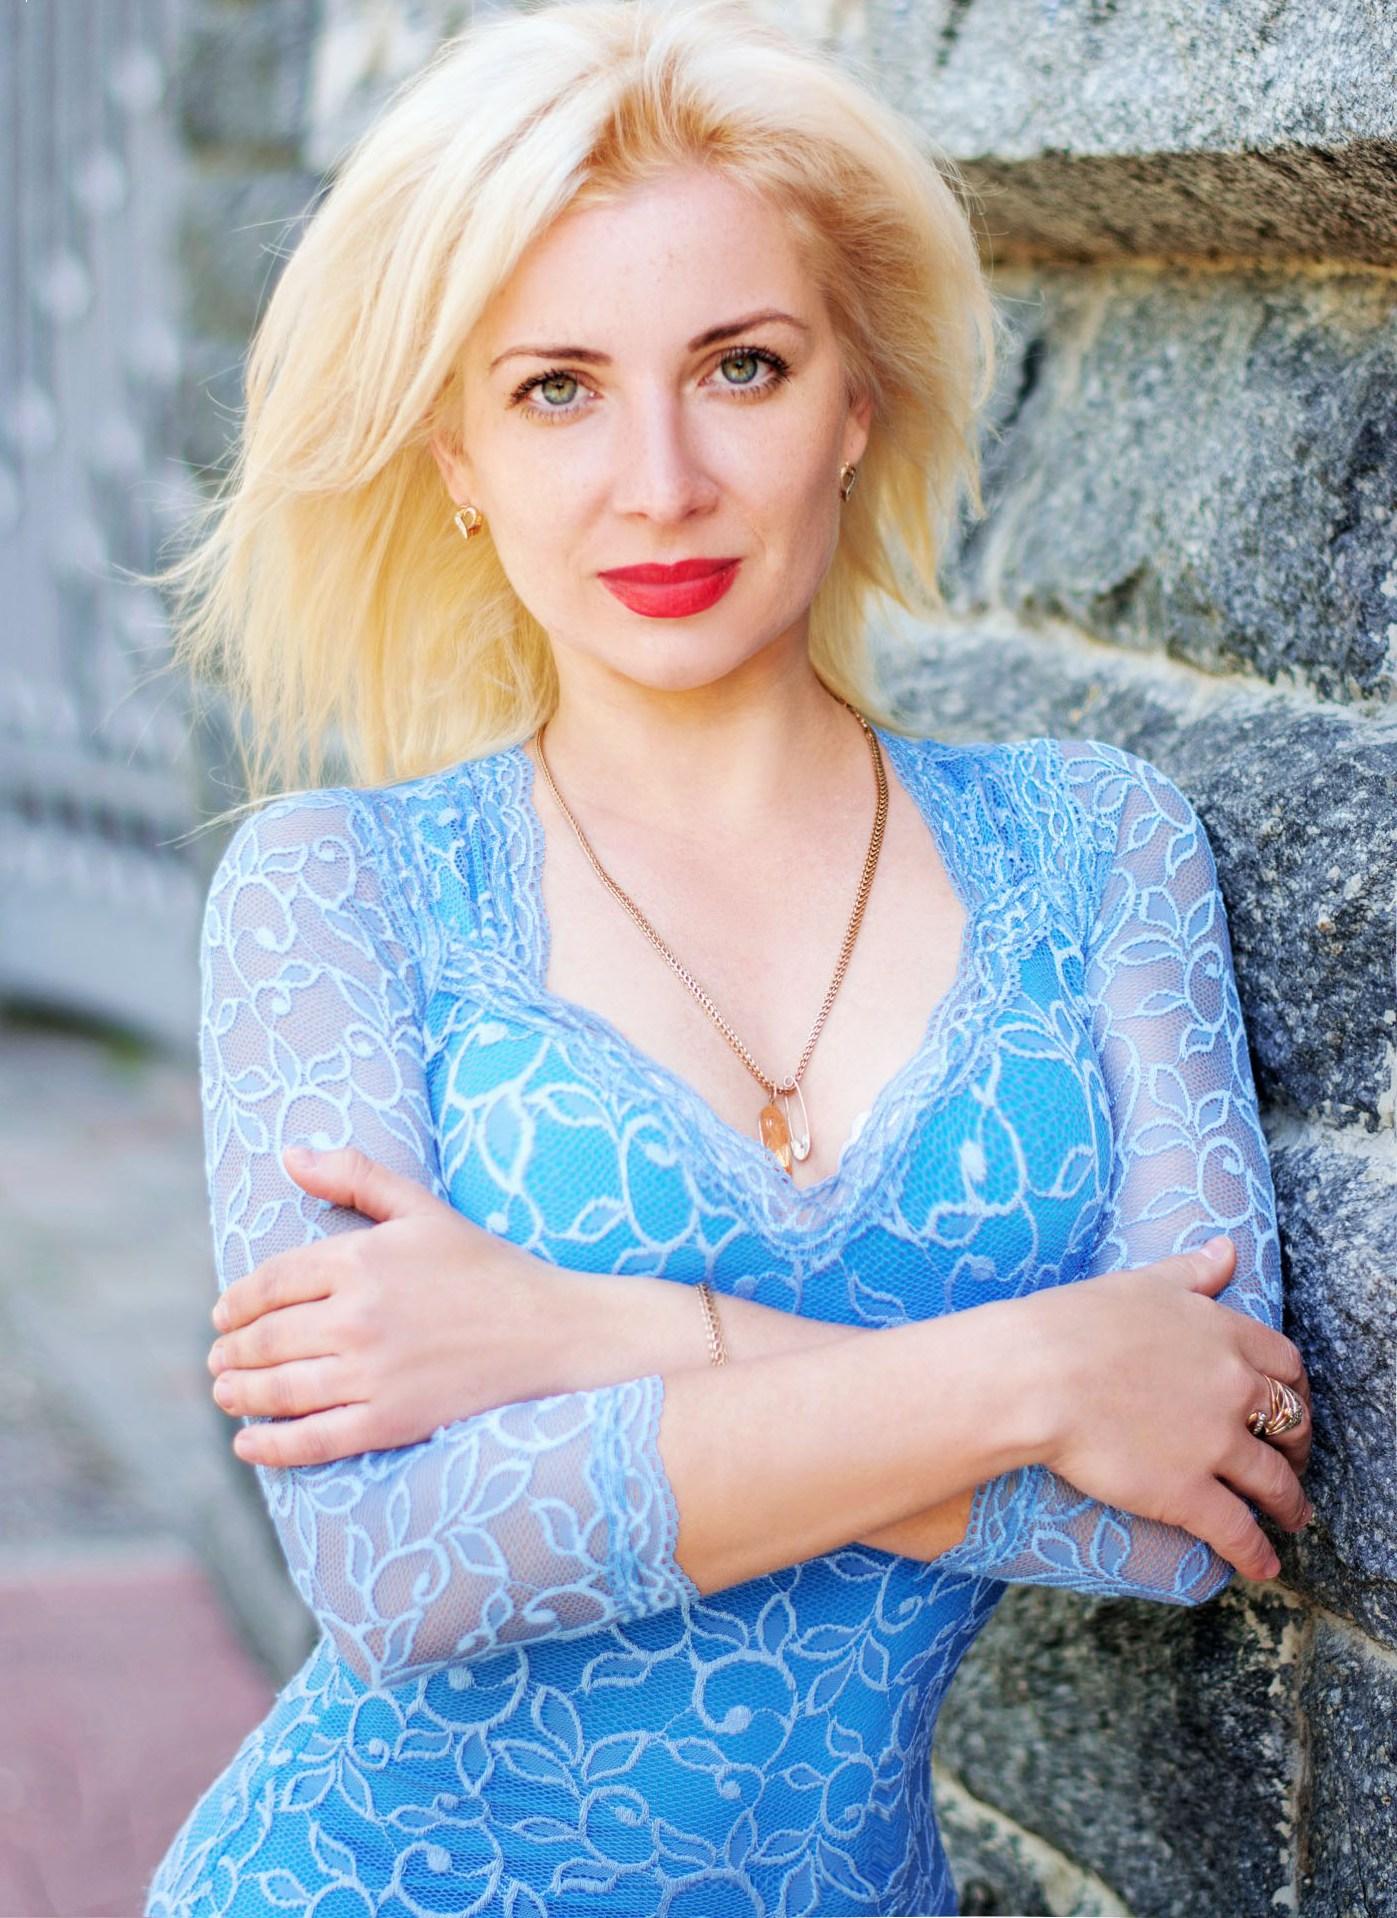 Elena| a single women from Ukraine